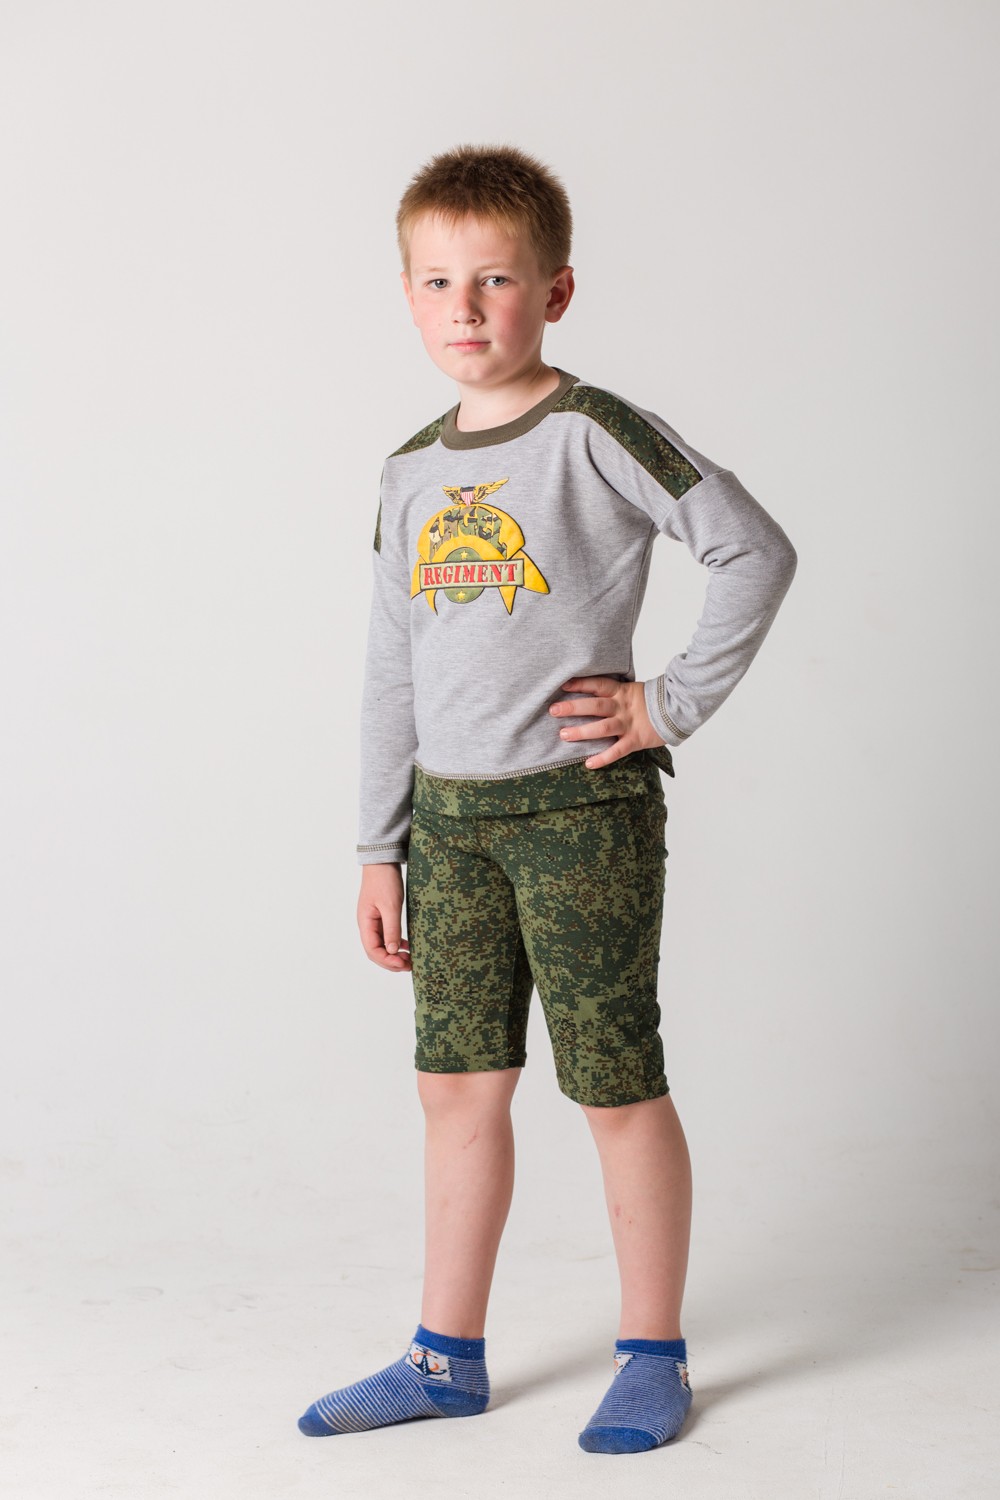 Толстовка подростковая для мальчика "Армия" с длинным рукавом